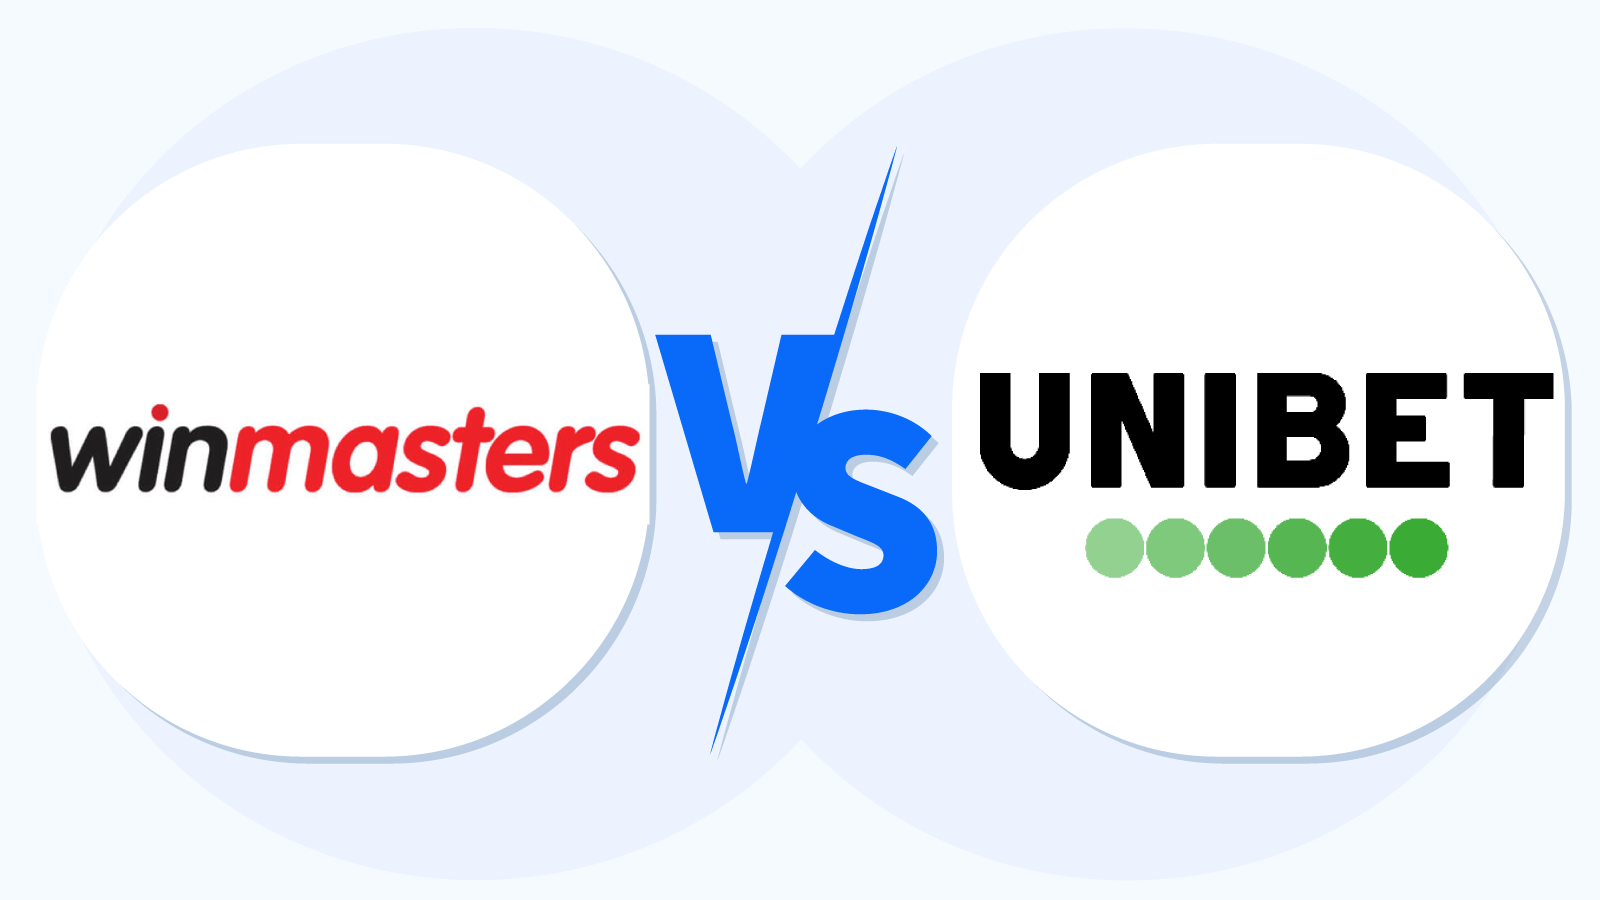 WinMasters versus Unibet